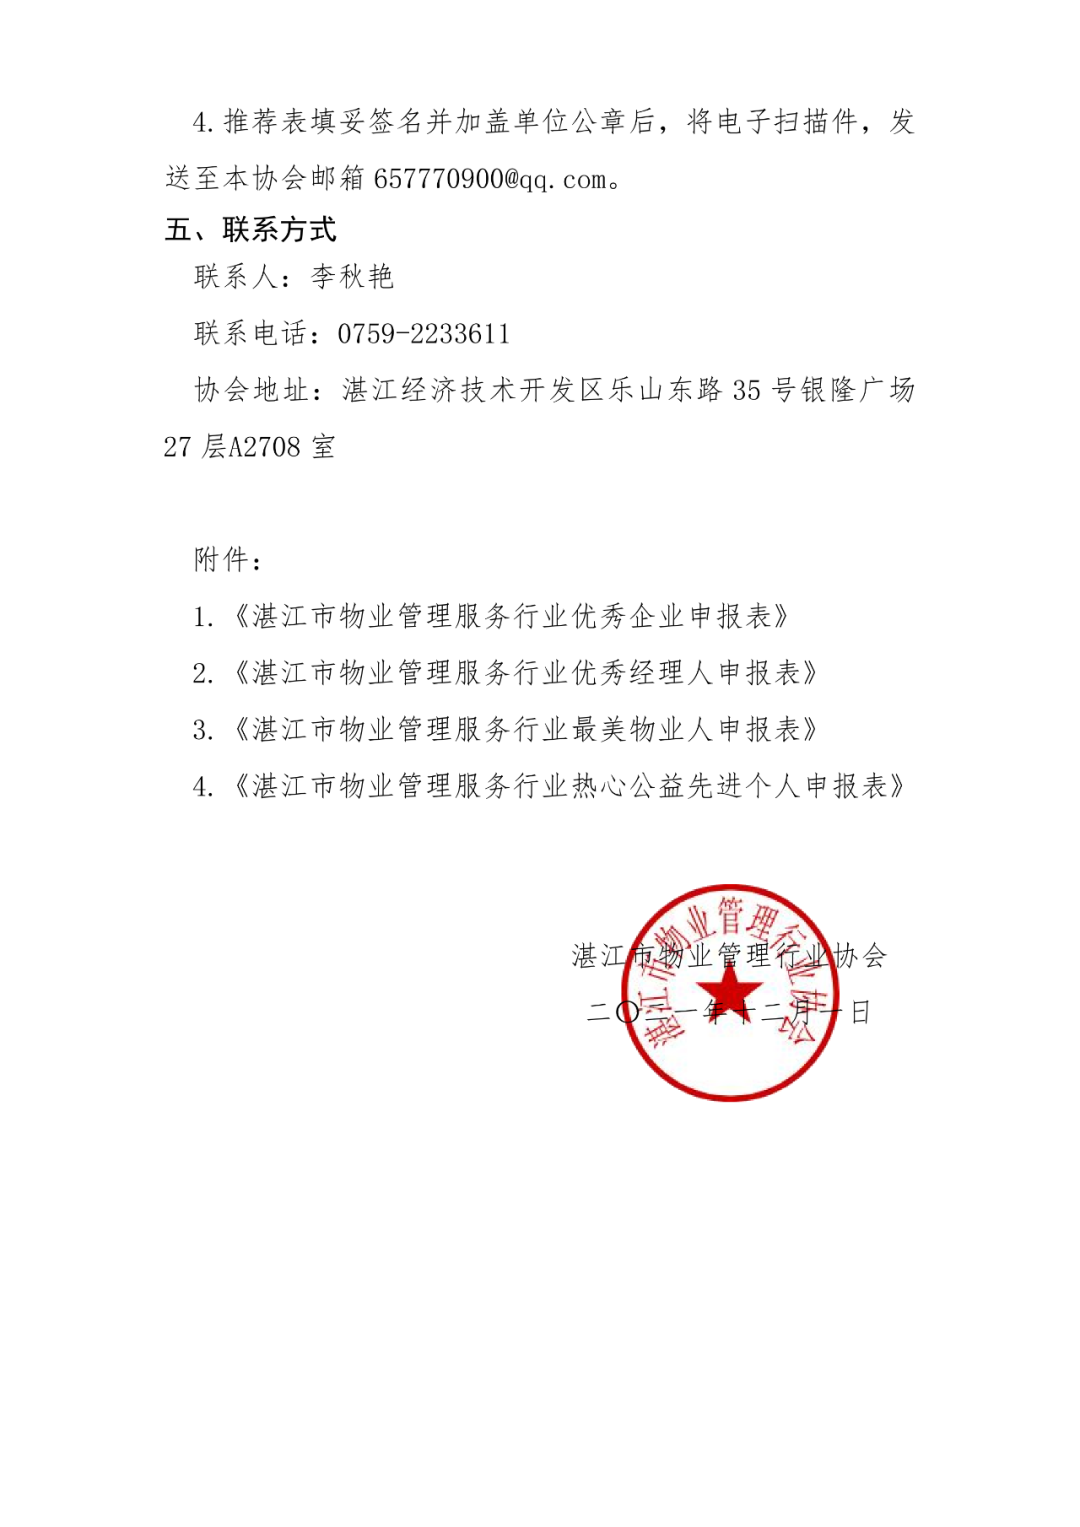 关于开展湛江市物业管理服务行业表彰活动